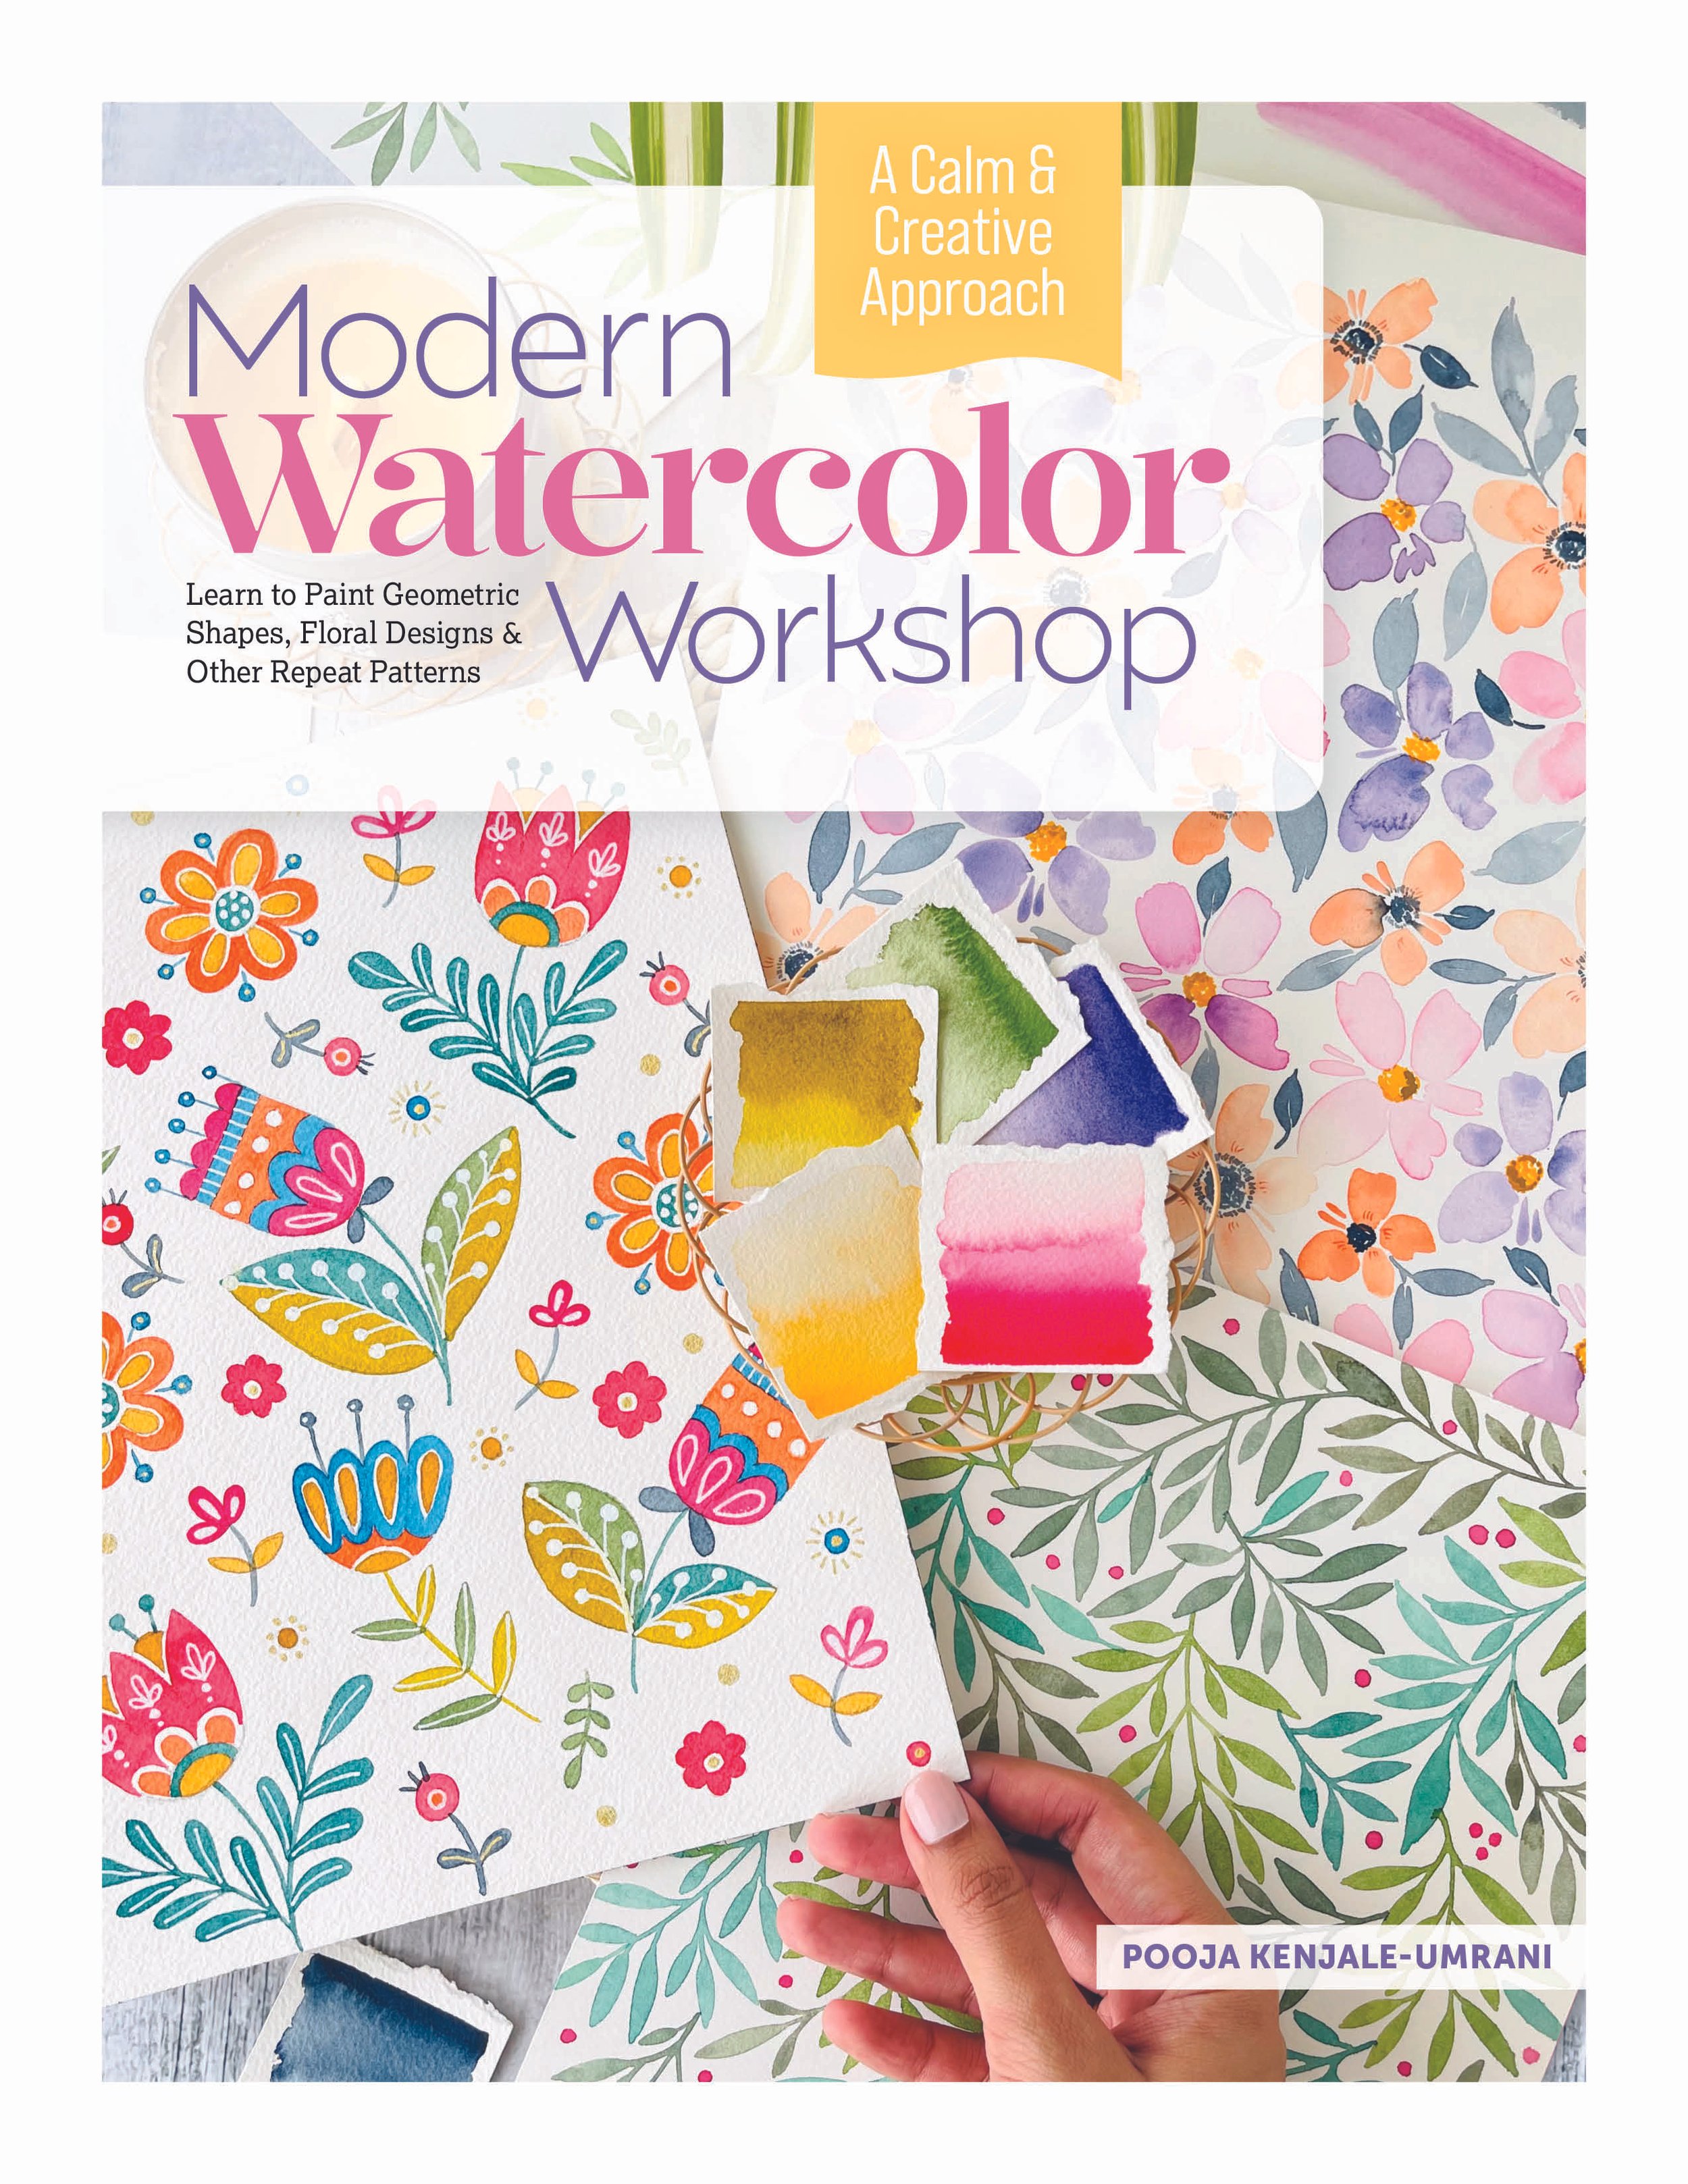 Modern Watercolor Workshop_Cover 978-0-7643-6859-2.jpg